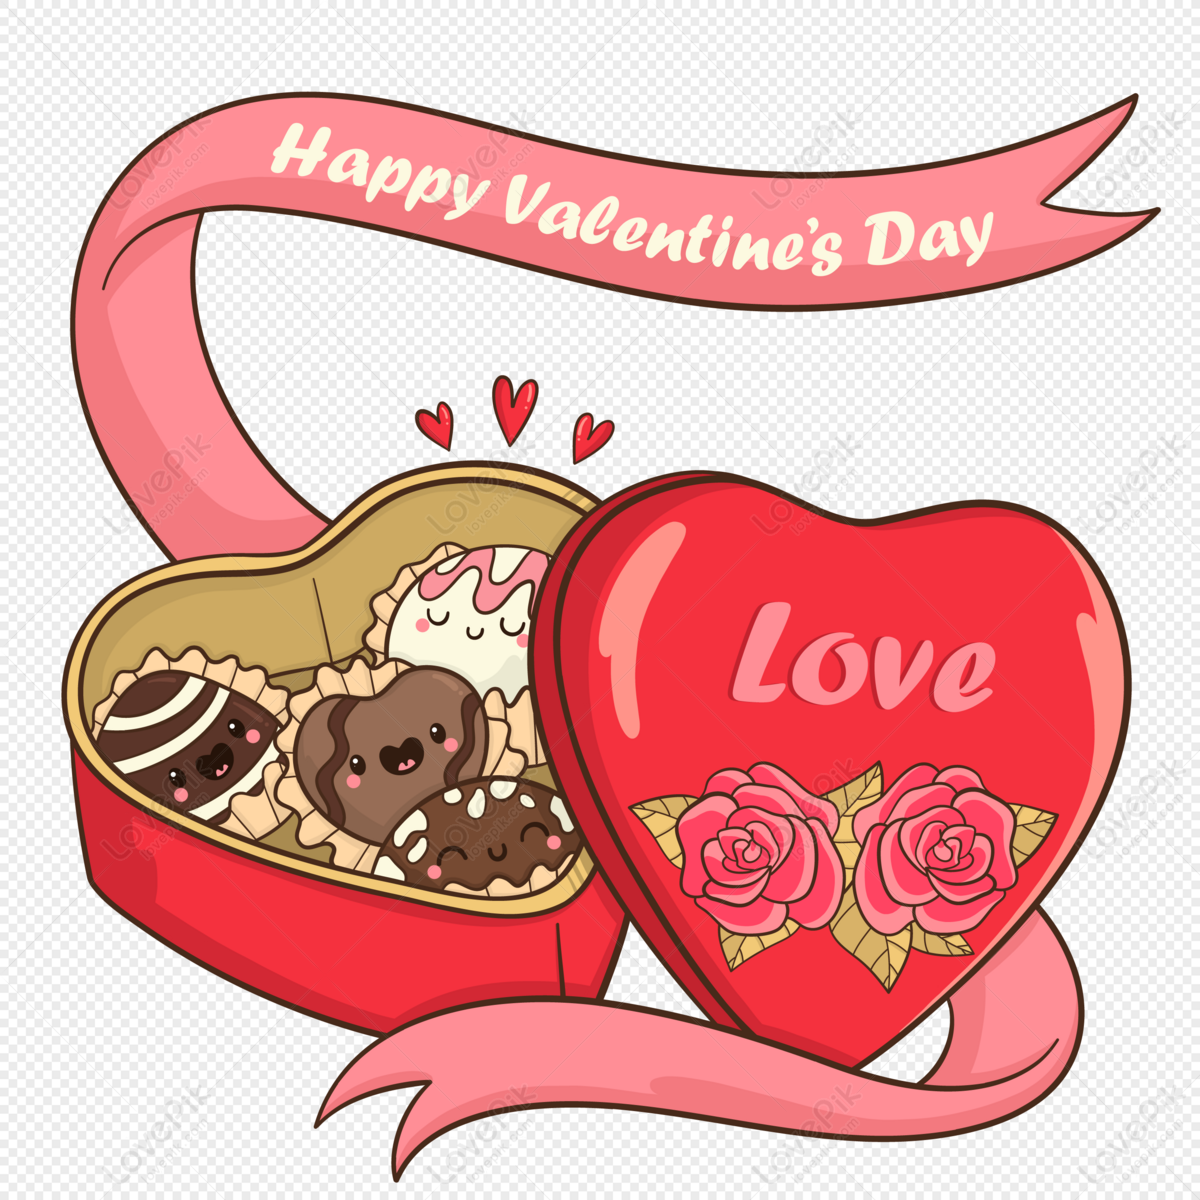 Sôcôla Ngày Valentine: Sử dụng Sôcôla là một trong những cách để thể hiện tình cảm của bạn trong dịp Lễ Tình Nhân Valentine. Hãy cùng chúng tôi khám phá những dòng Sôcôla Ngày Valentine đậm chất hương vị và bất ngờ trên bức ảnh này.